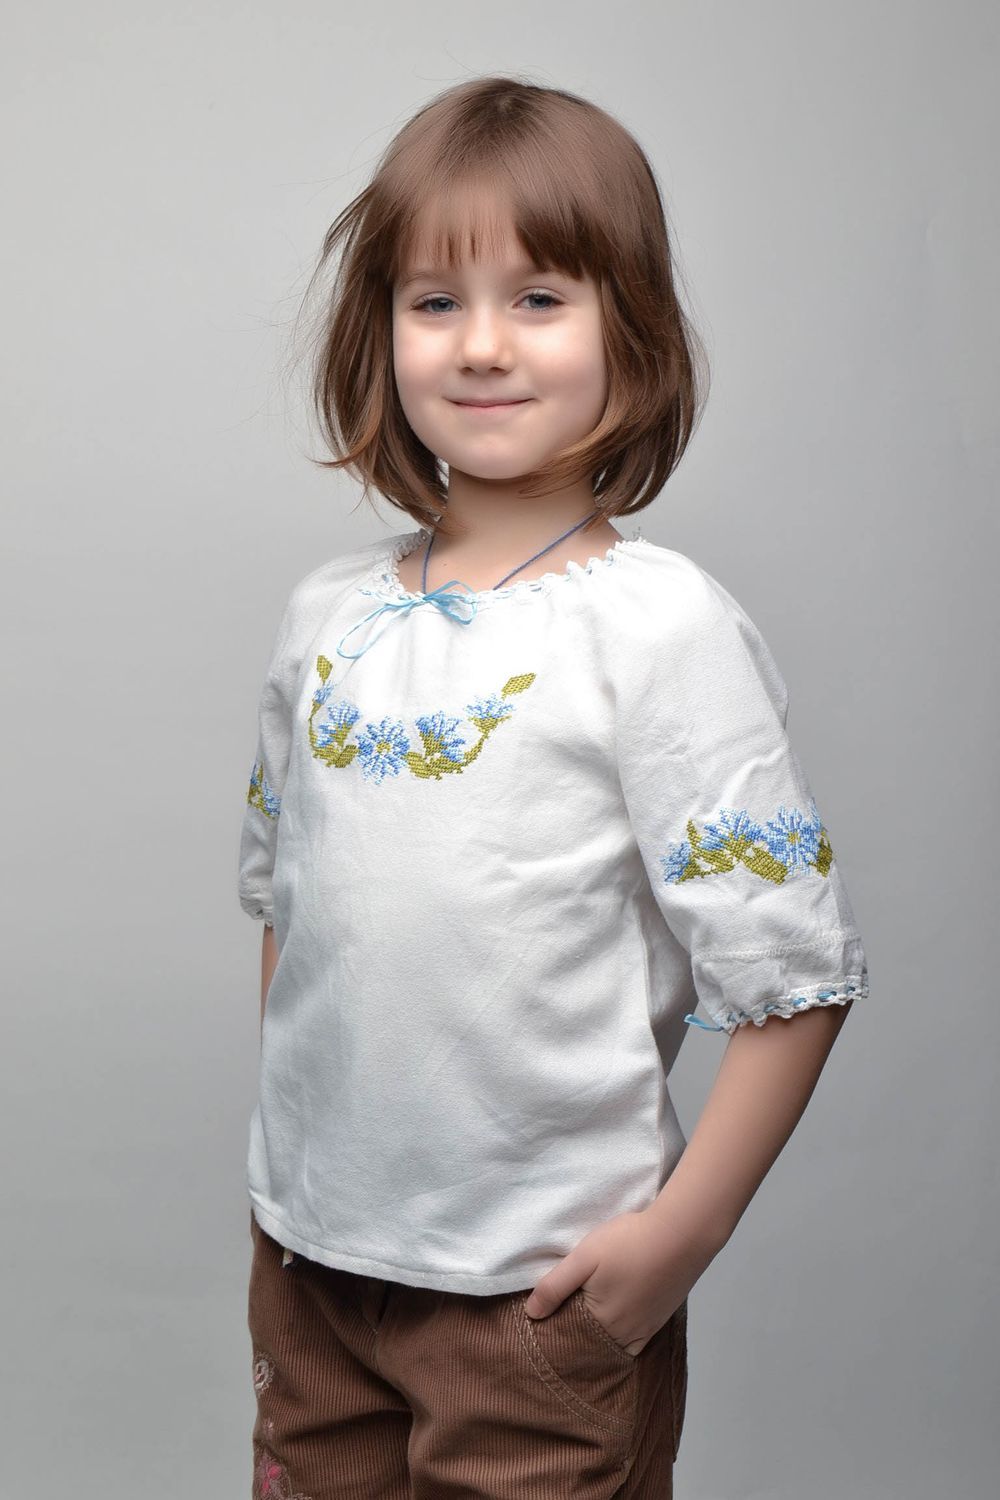 Chemise pour enfant blanche brodée photo 1